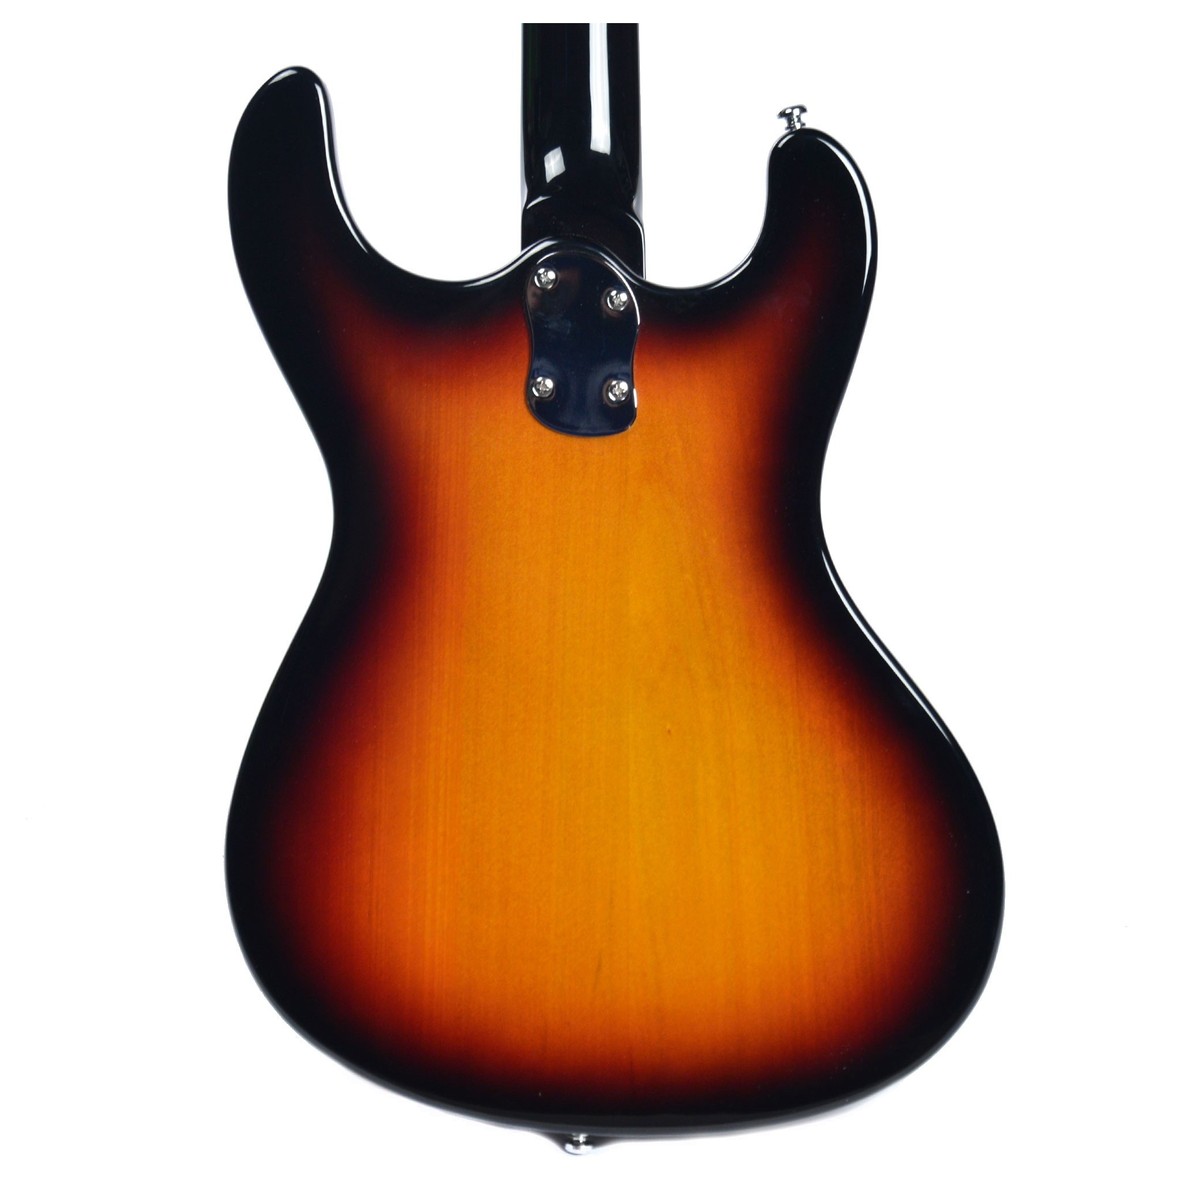 Danelectro The 64 Guitar Hs Trem Rw - Sunburst - Double Cut E-Gitarre - Variation 3